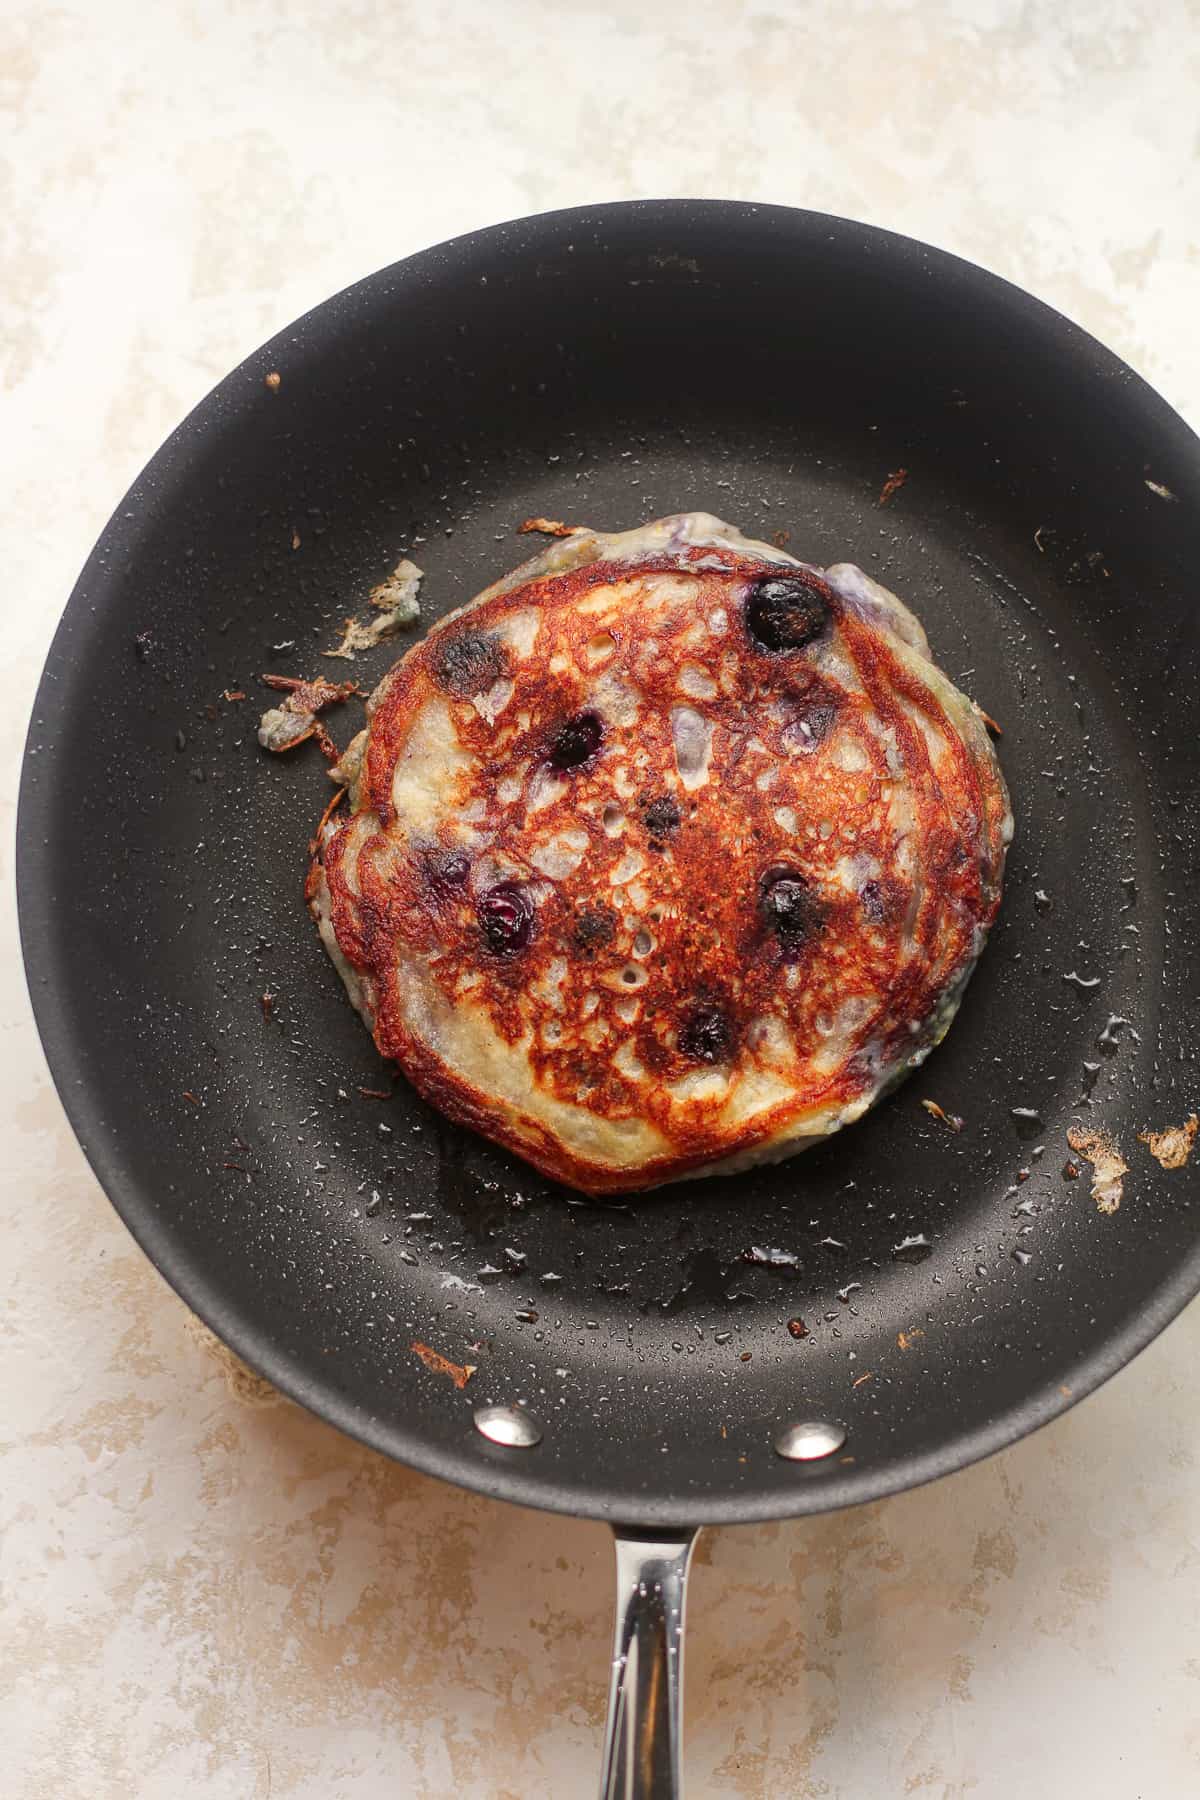 A pan of a blueberry pancake.